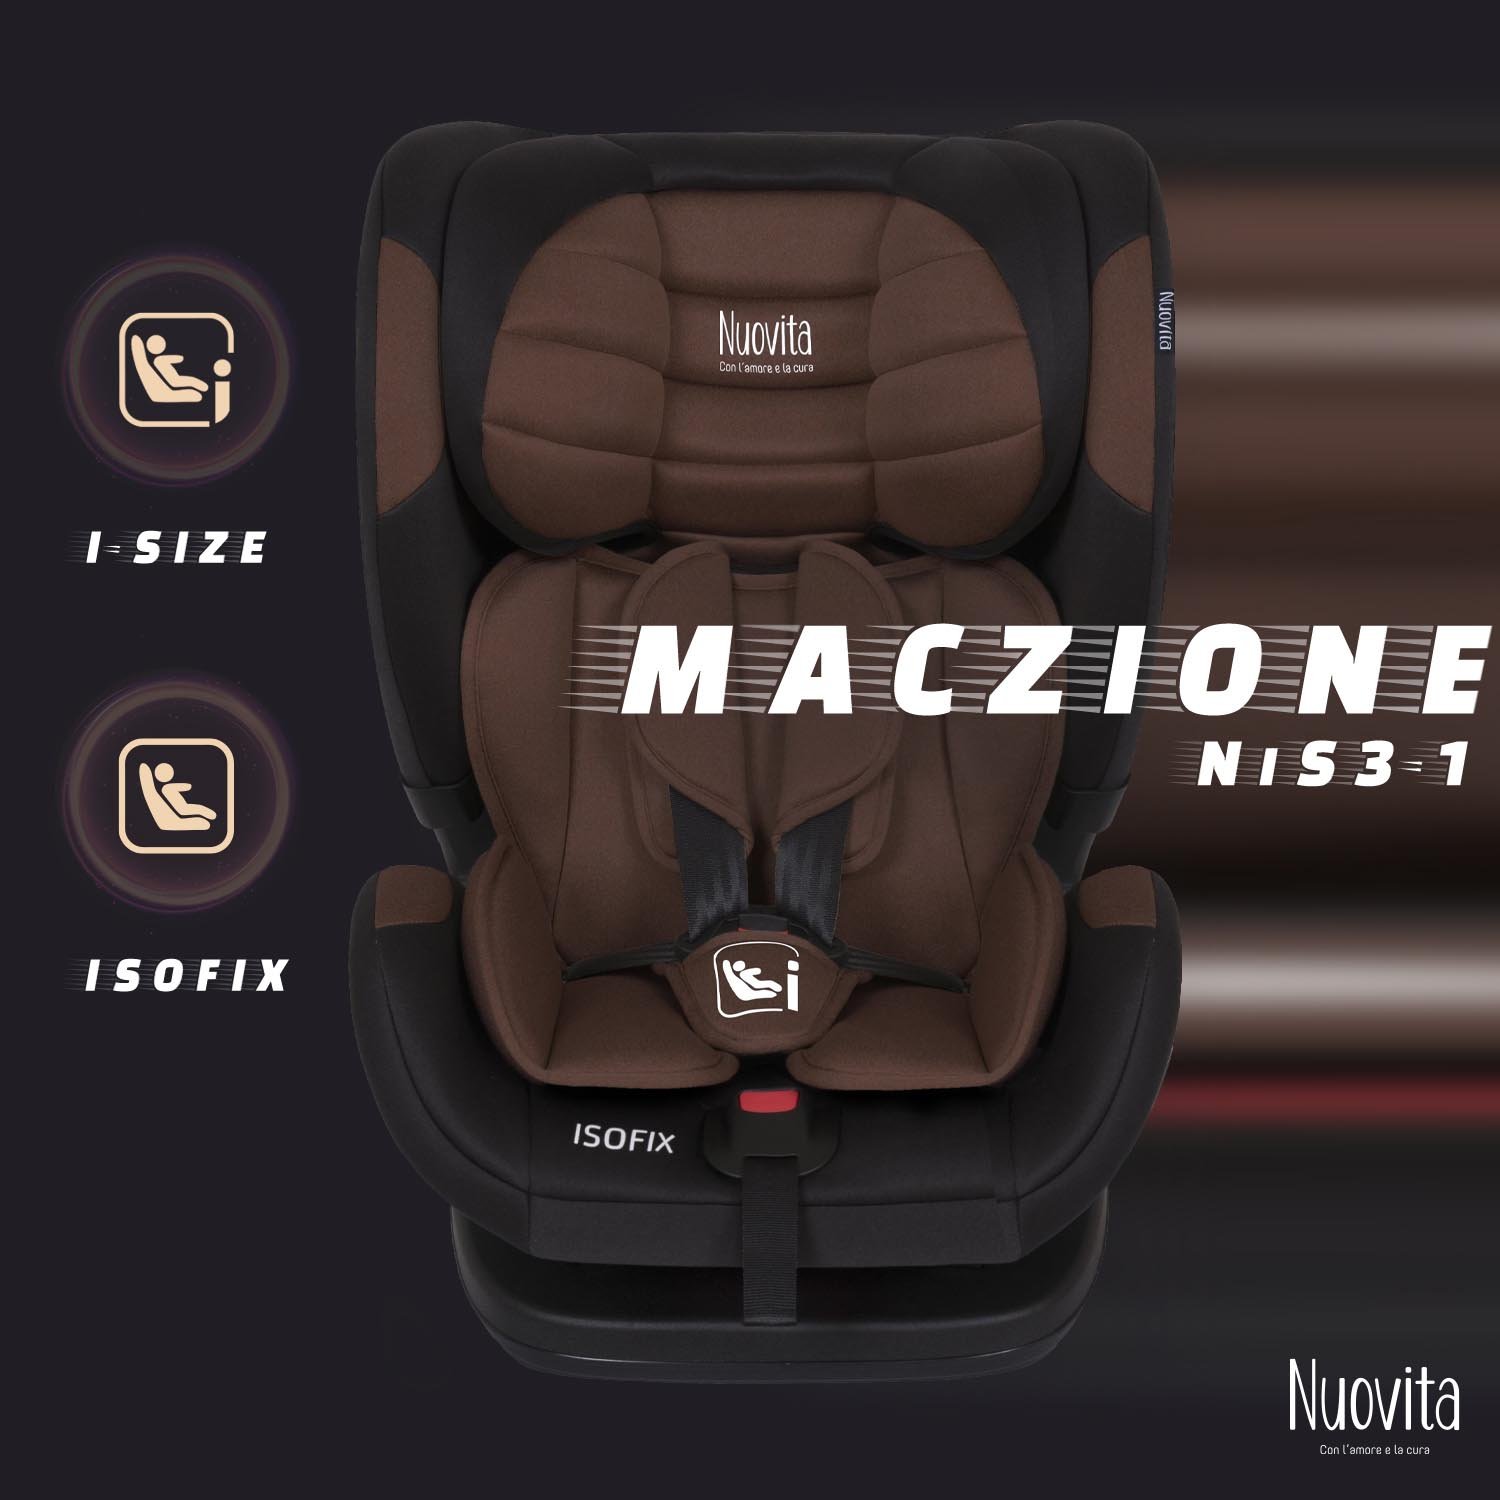 Детское автокресло Nuovita Maczione NiS3-1, Isofix, группа 1,2,3, 9-36 кг (Шоколад) автокресло nuovita maczione nis3 1